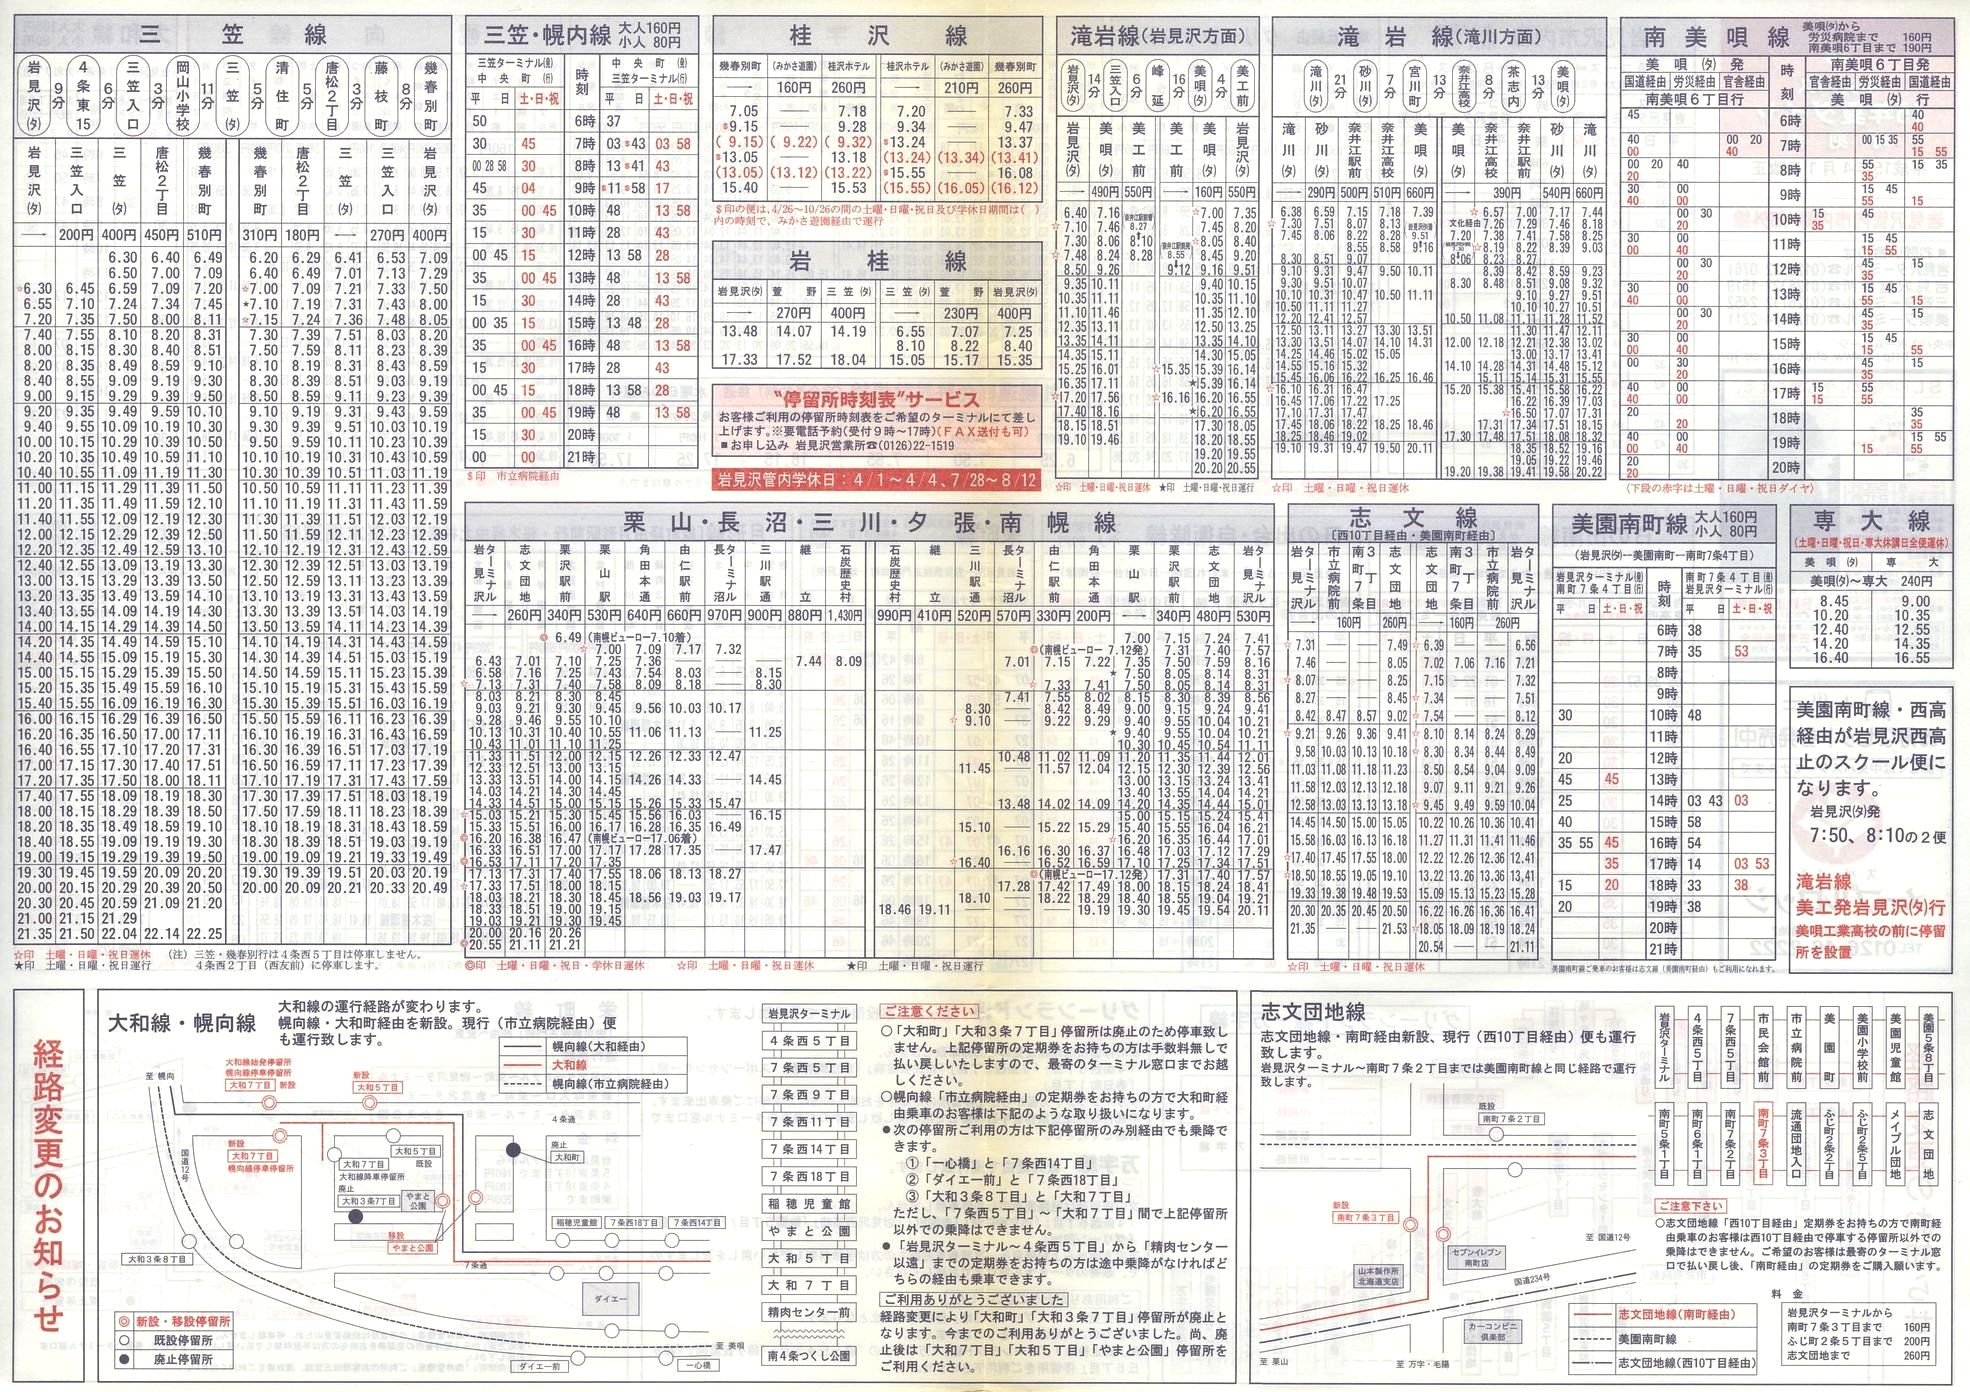 2003-04-01改正_北海道中央バス(空知)_岩見沢管内線時刻表裏面